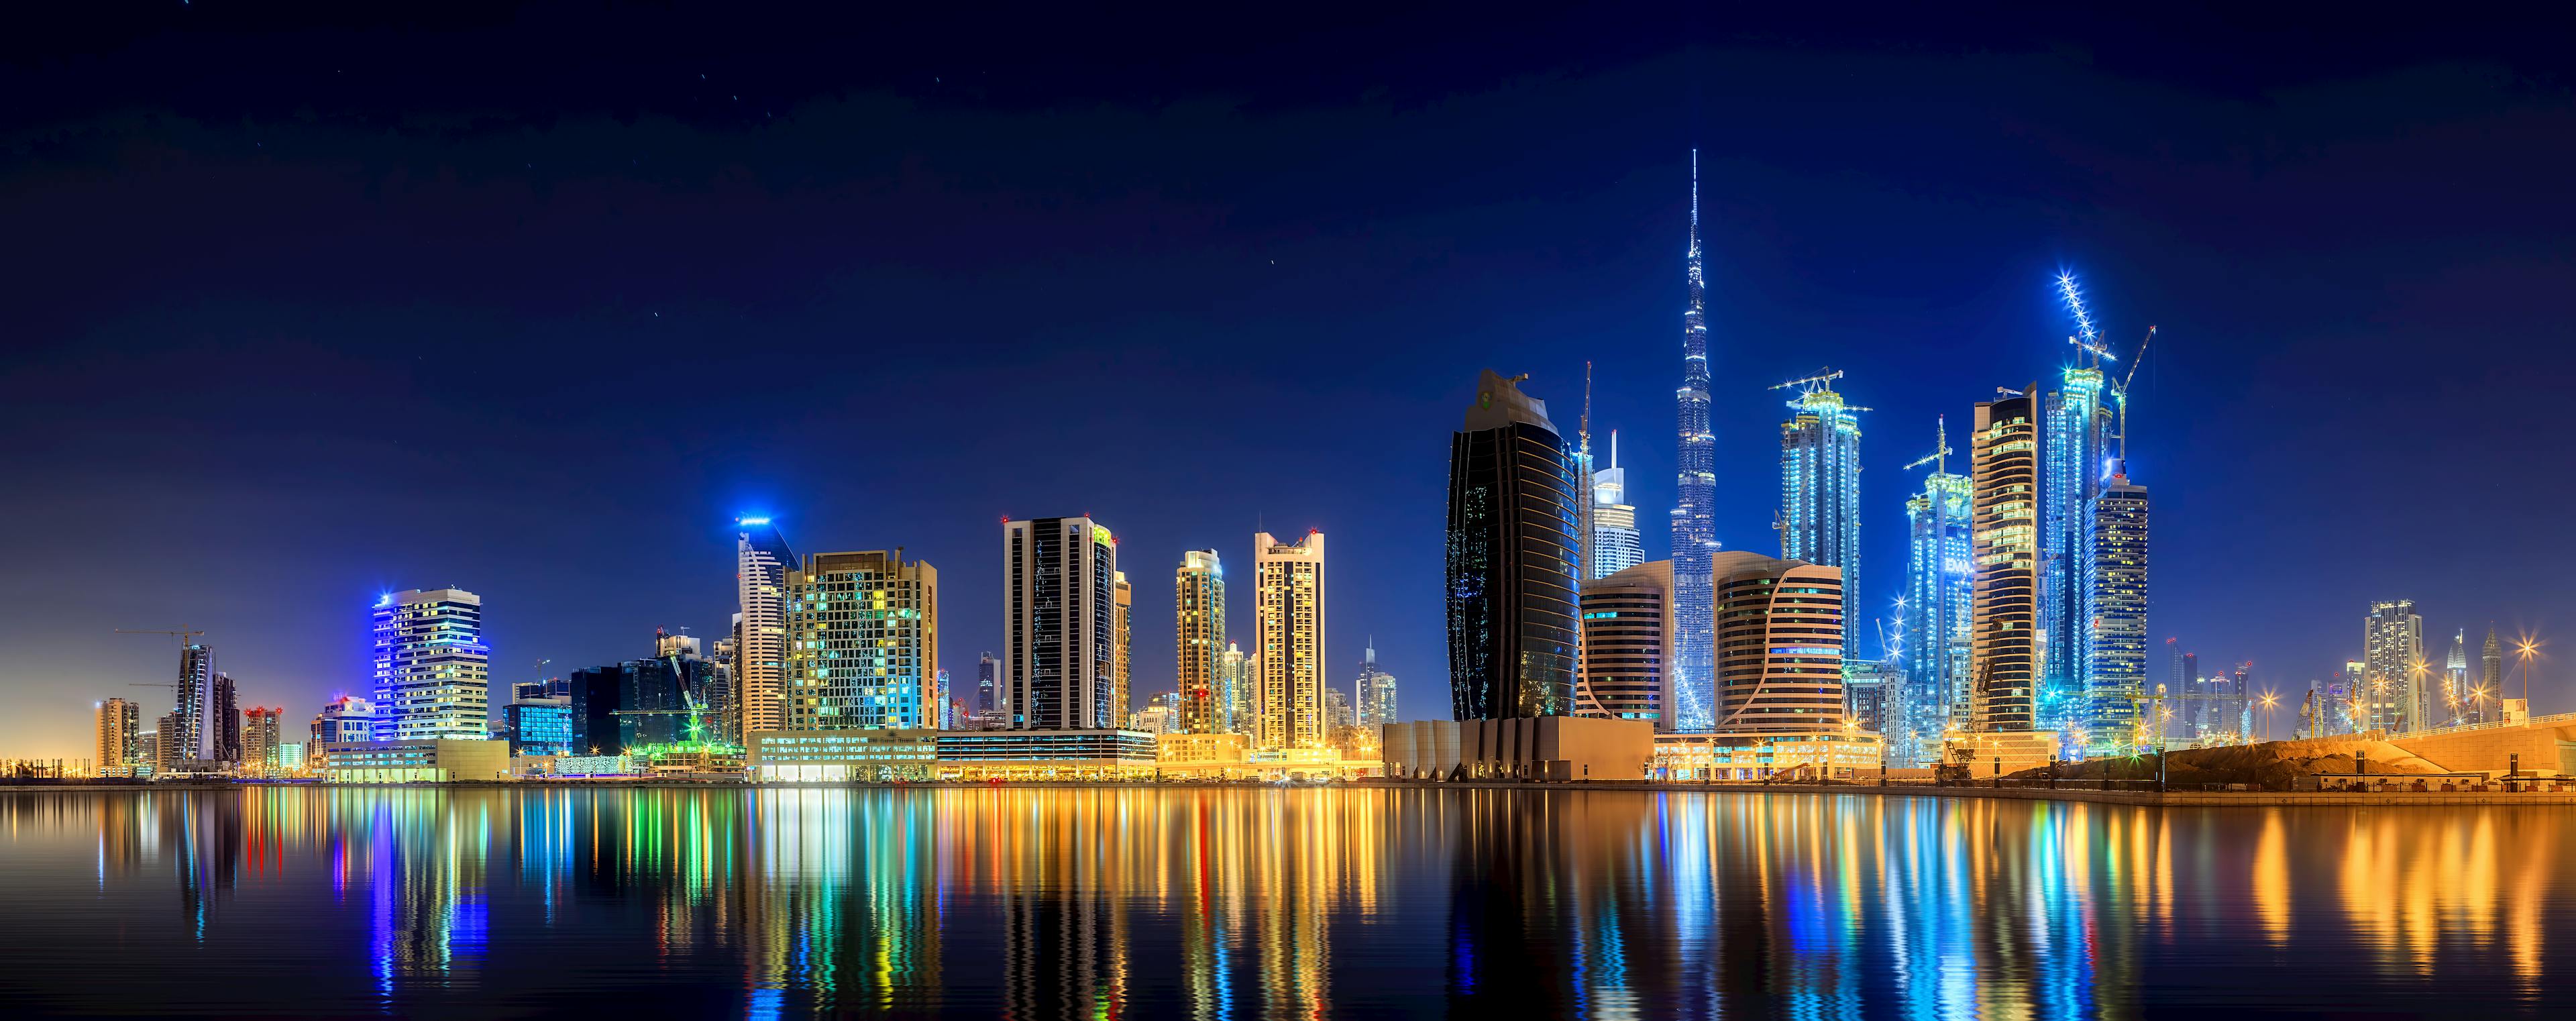 Dubai panoramic view in the night